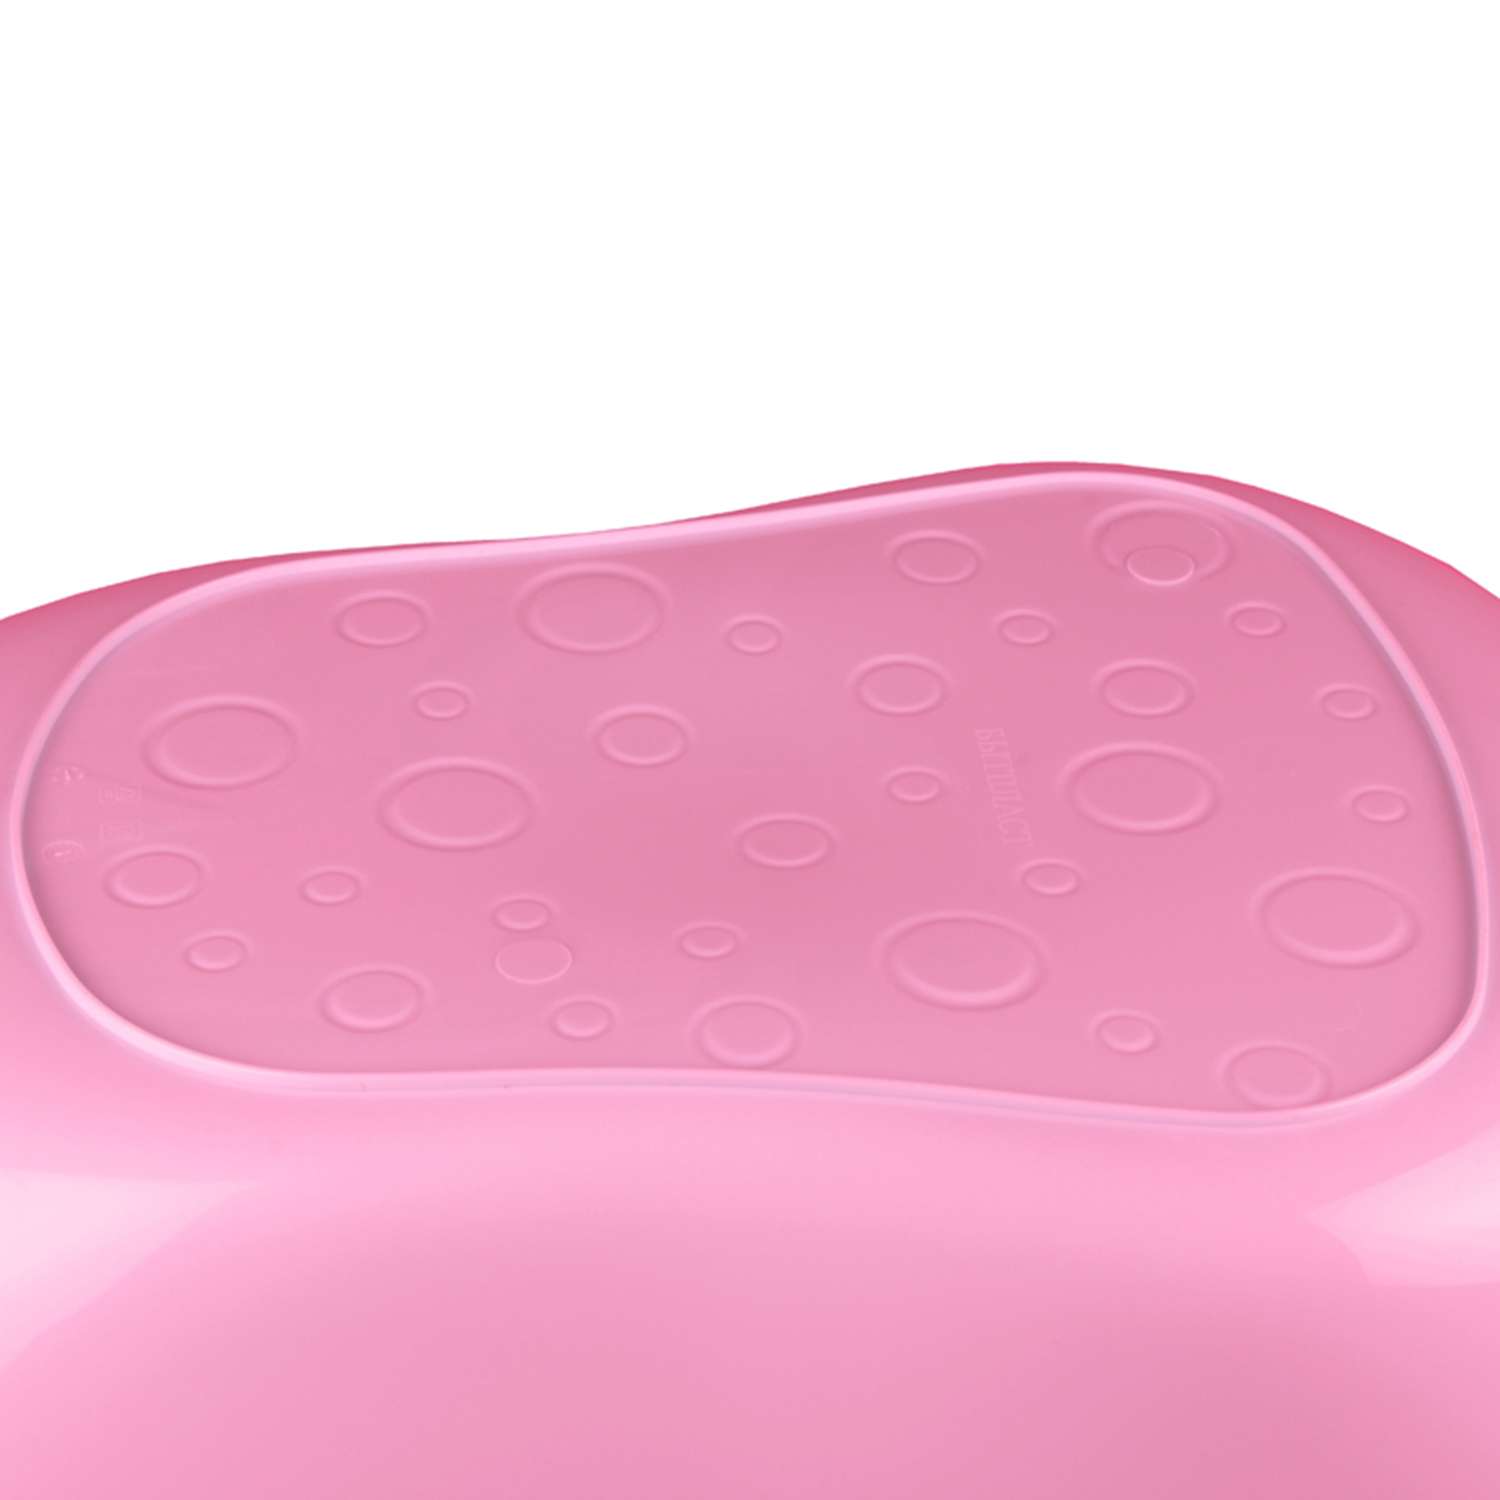 Ванна детская Пластишка розовая - фото 4